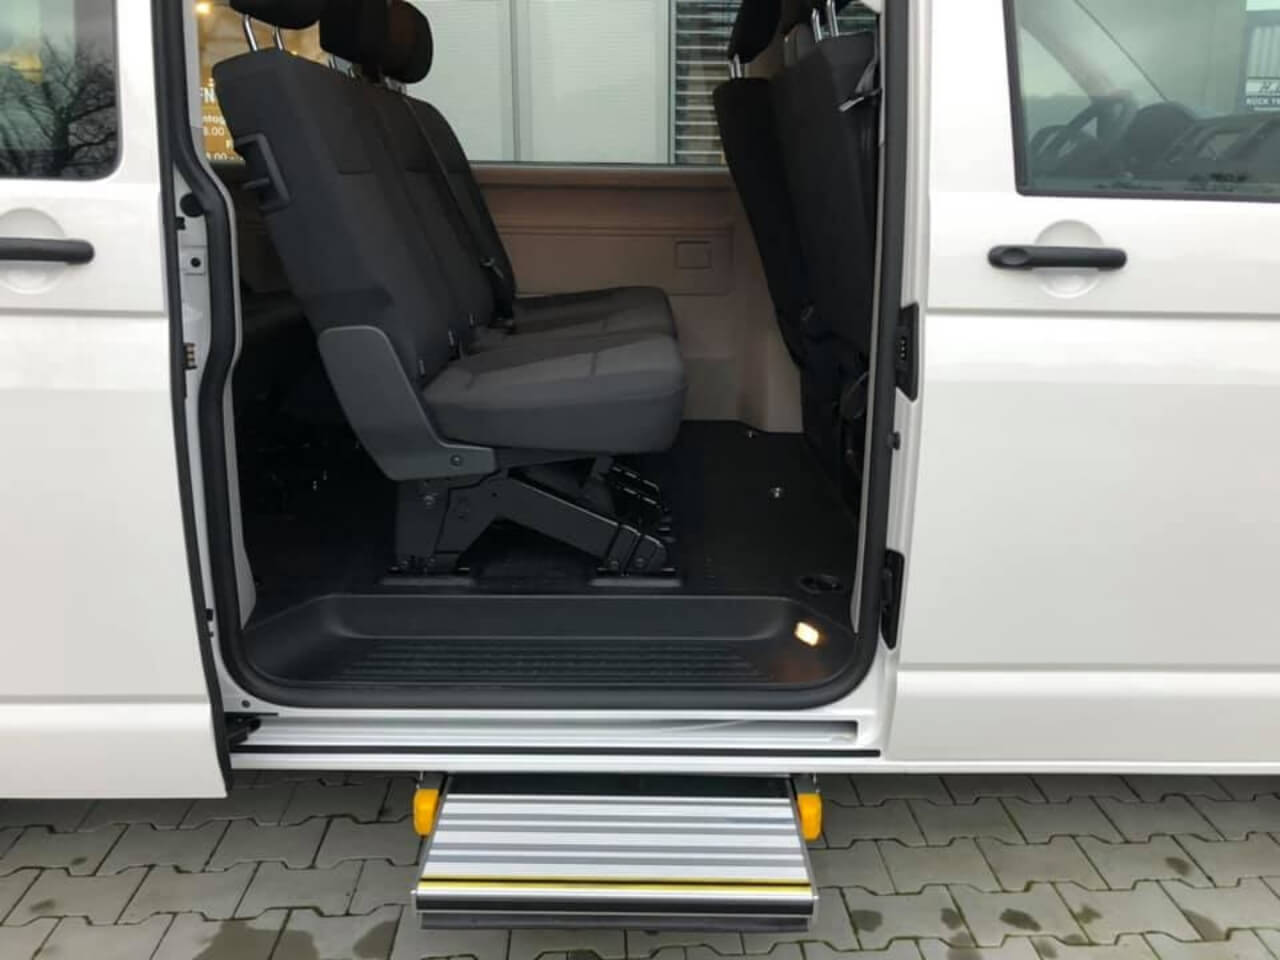 Behindertengerechtes Umbau - VW Bus t6 mit Linearlift für Rollstuhlfahrer - Fricke Behindertengerechte Fahrzeuge (4)